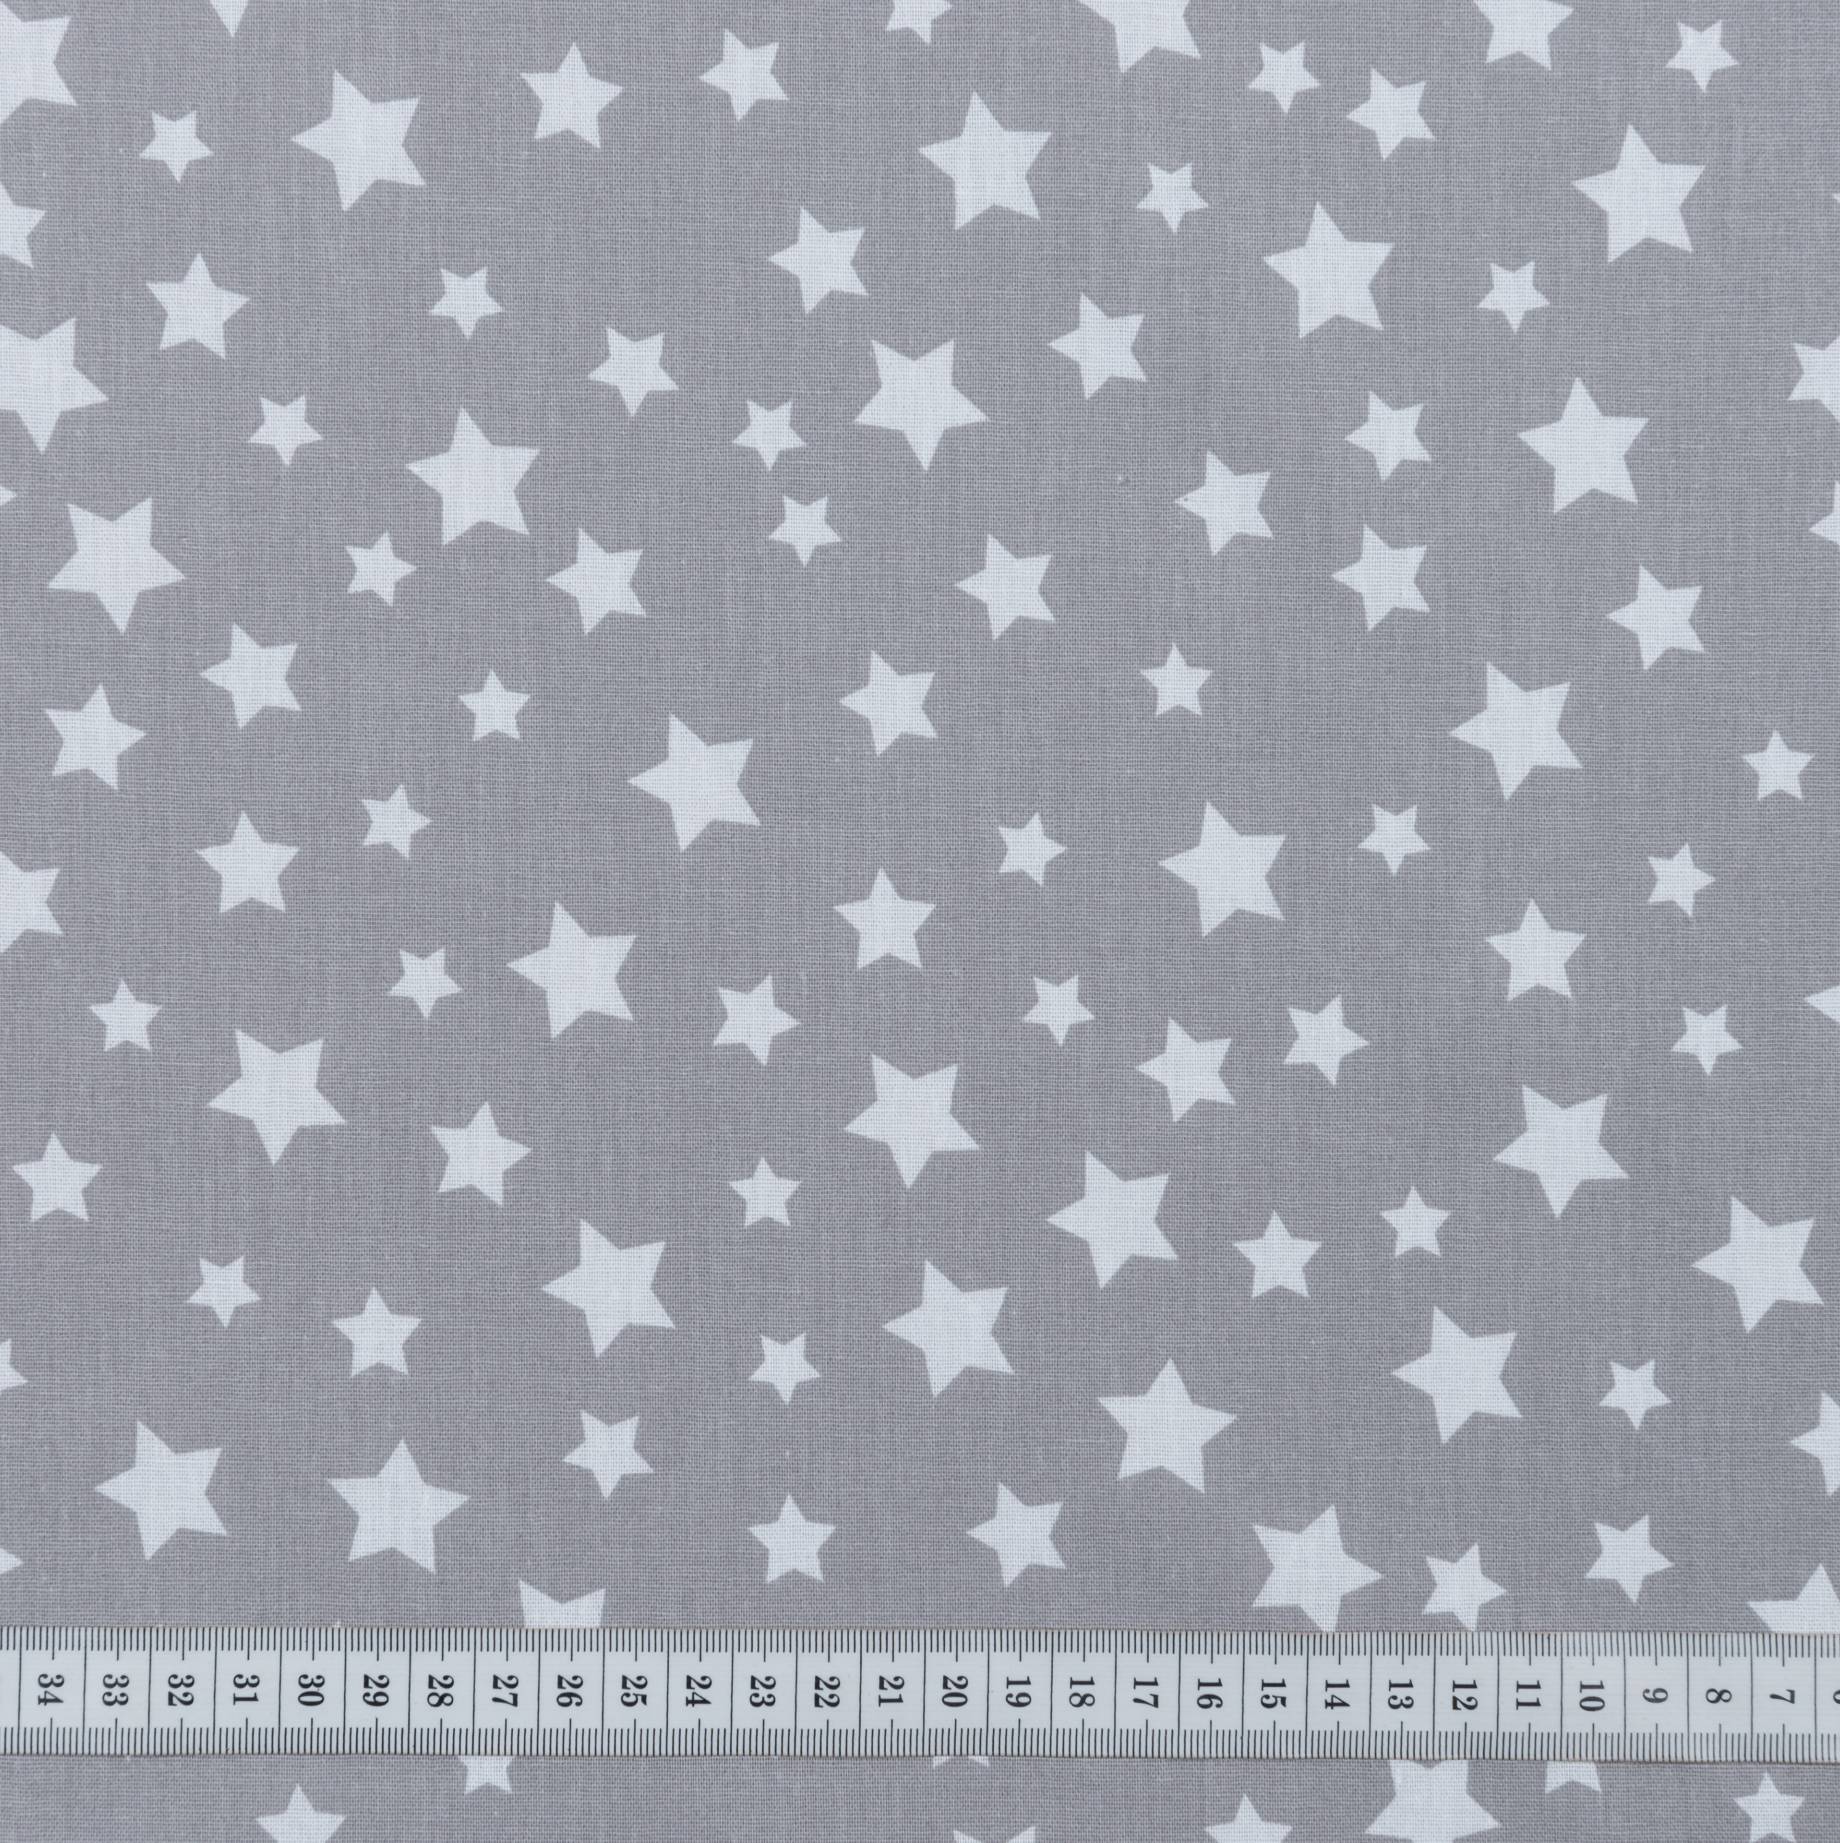 Бязь набивная, Звезды, серый, плотность 120, 50x55, хлопок 100%